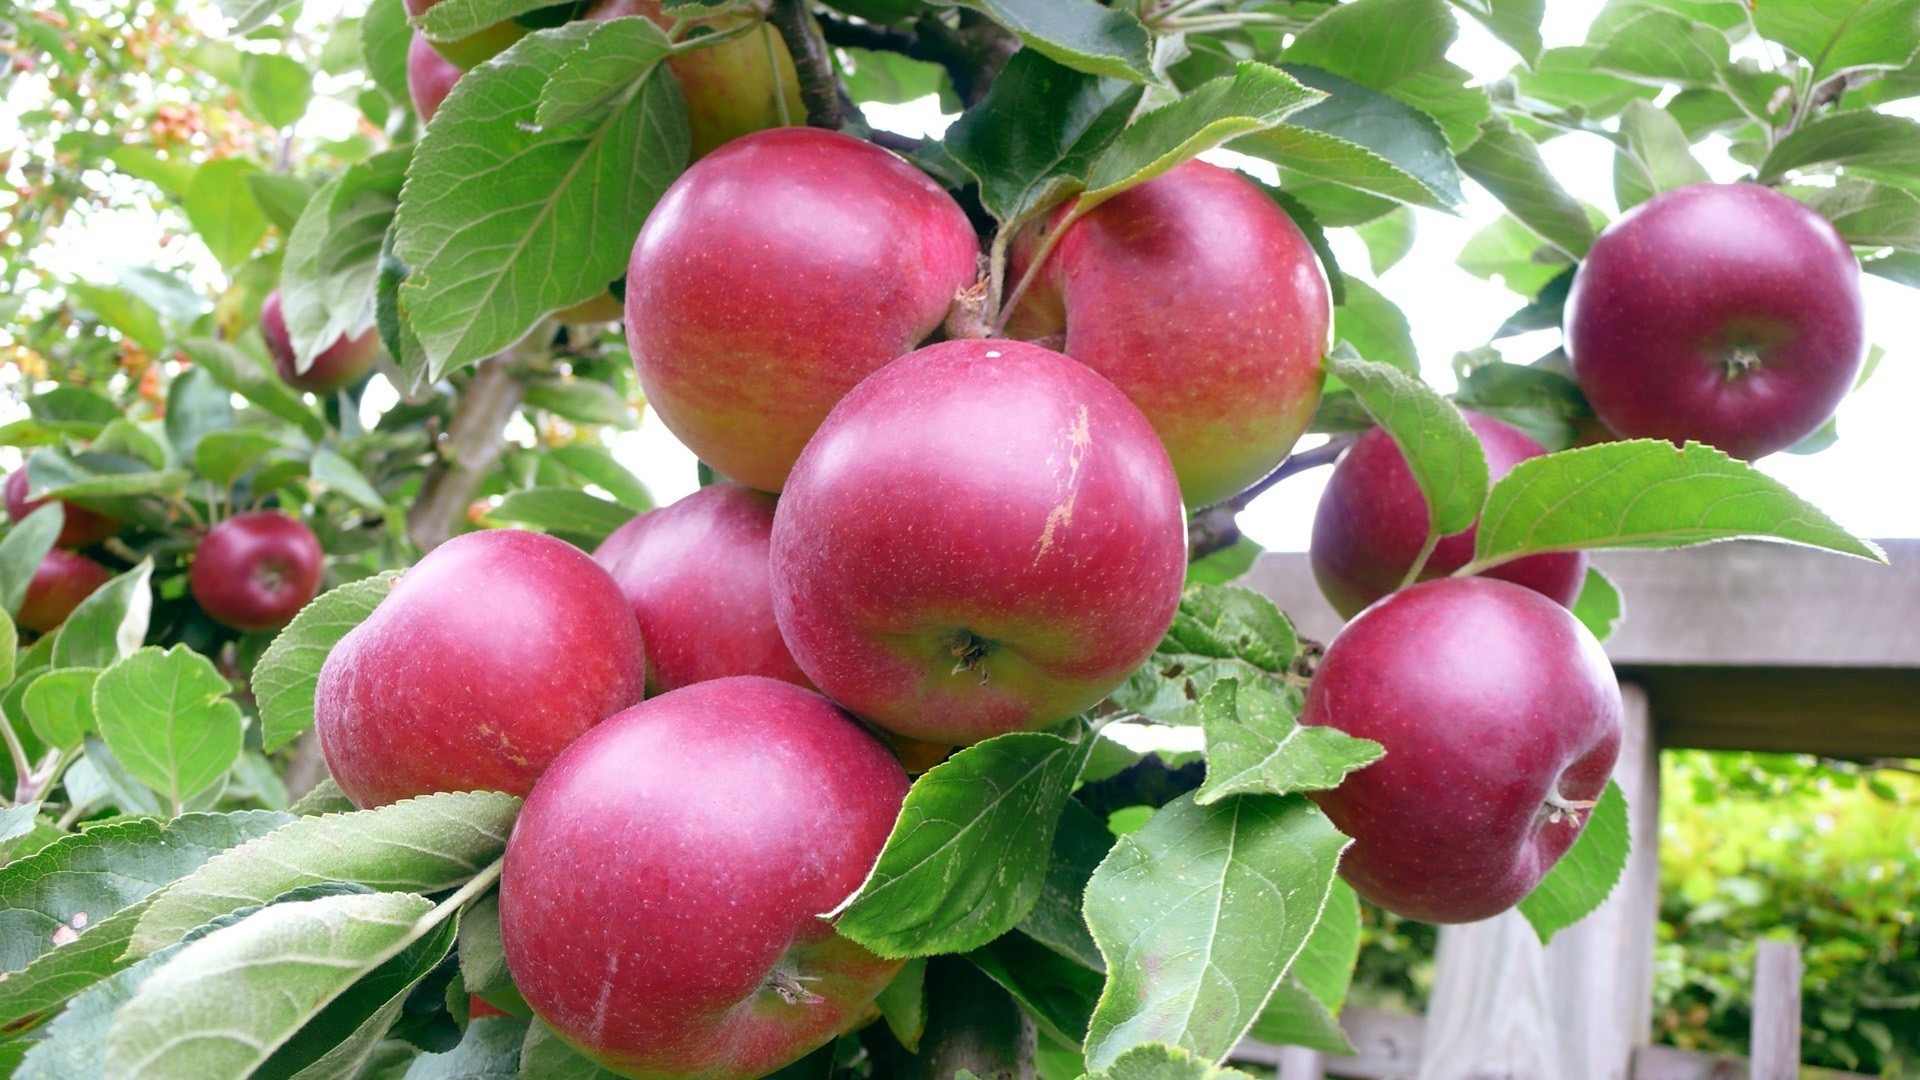 фрукты яблоко лист пастбище здоровья еда сочные природа питание здоровый вкусные сад кондитерское изделие диета лето сельское хозяйство витамин свежесть сок